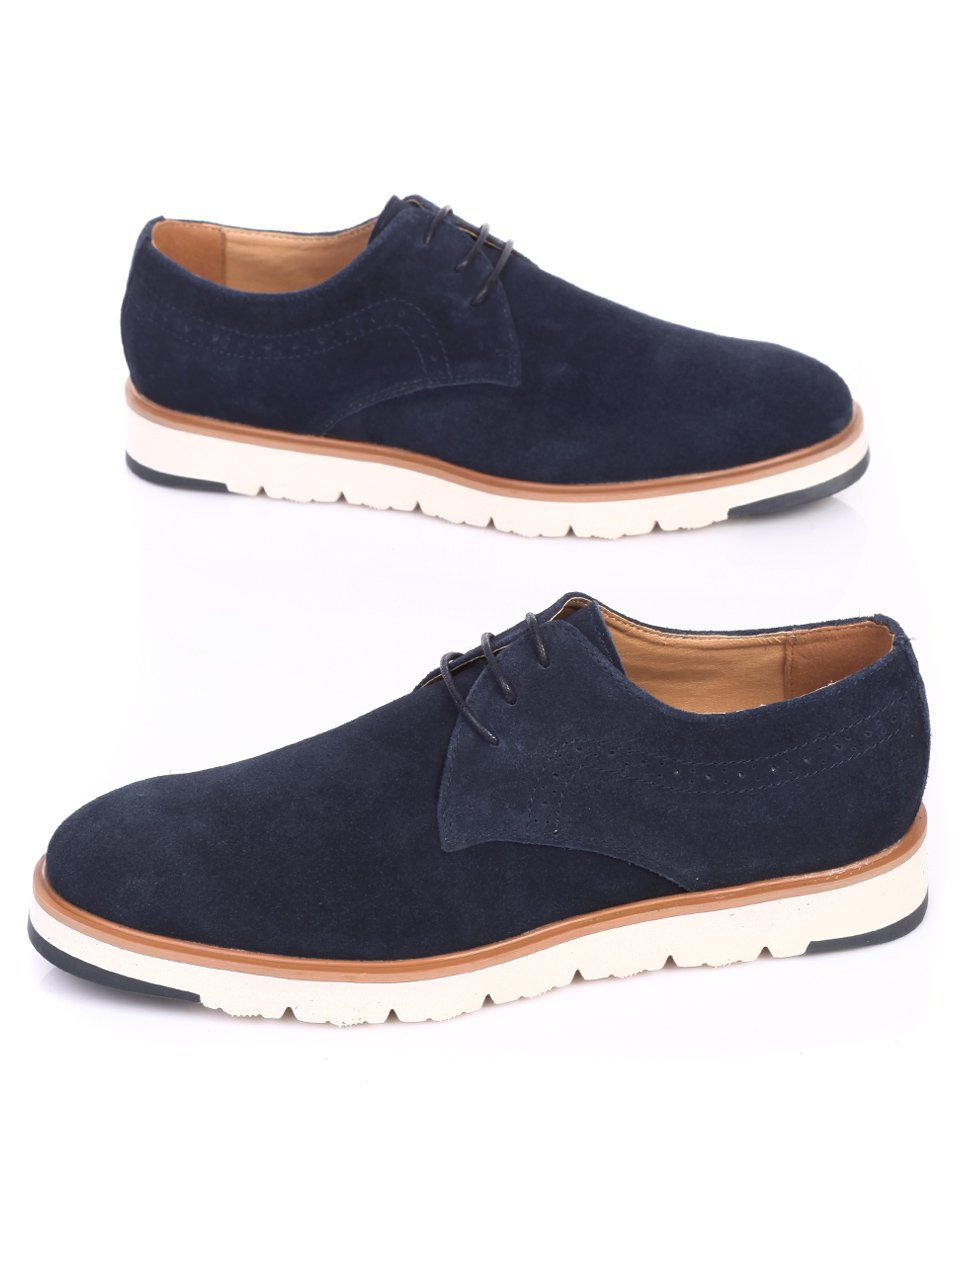 Ежедневни мъжки обувки от естествен велур в синьо 7N-17451 navy